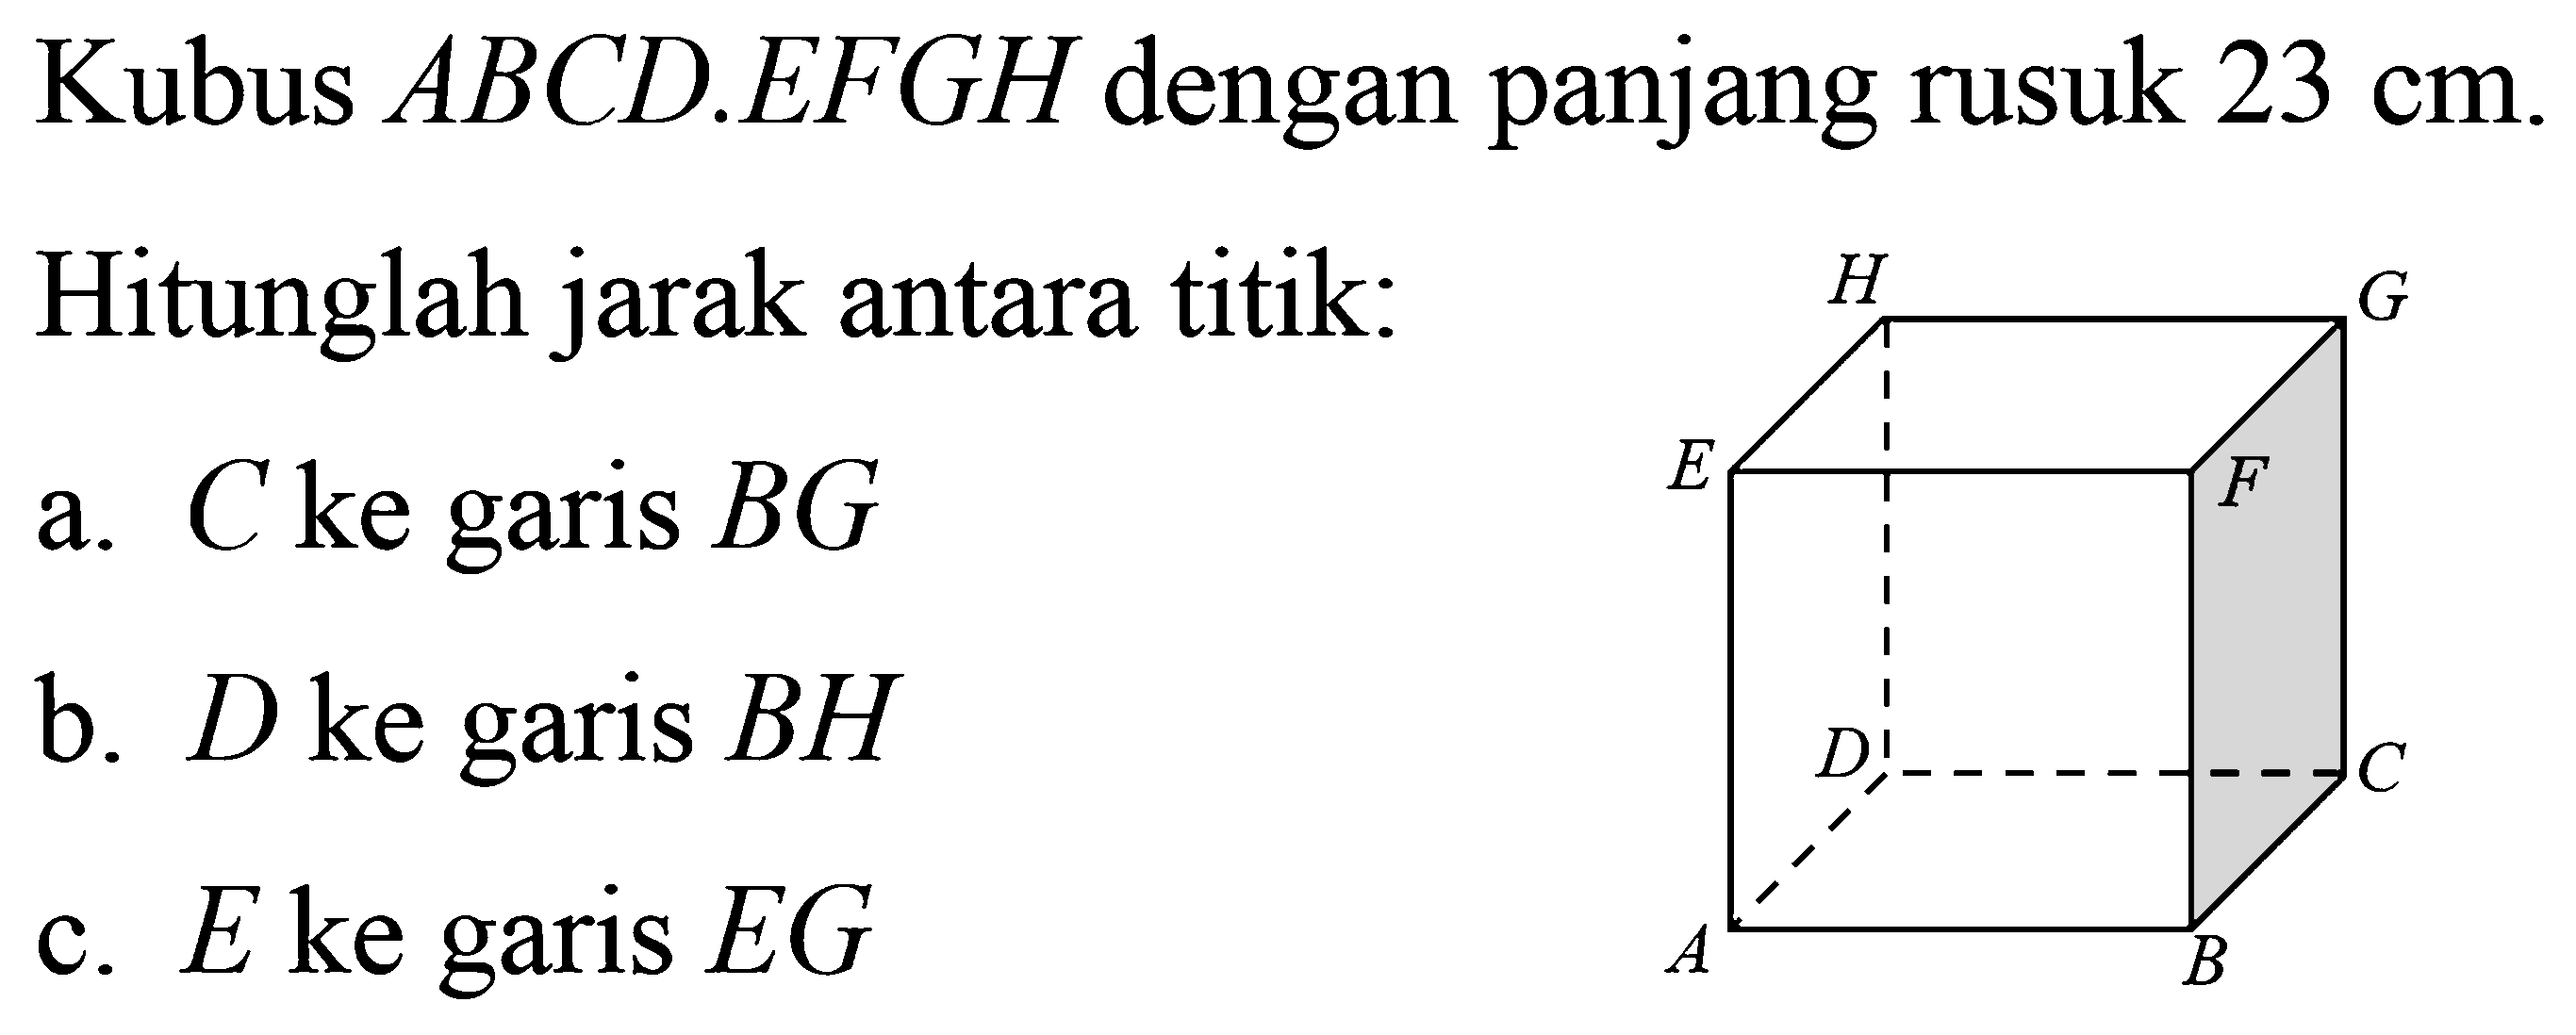 Kubus ABCD.EFGH dengan panjang rusuk 23 cm. Hitunglah jarak antara titik: a. C ke garis BG b. D ke garis BH c. E ke garis EG ABCDEFGH